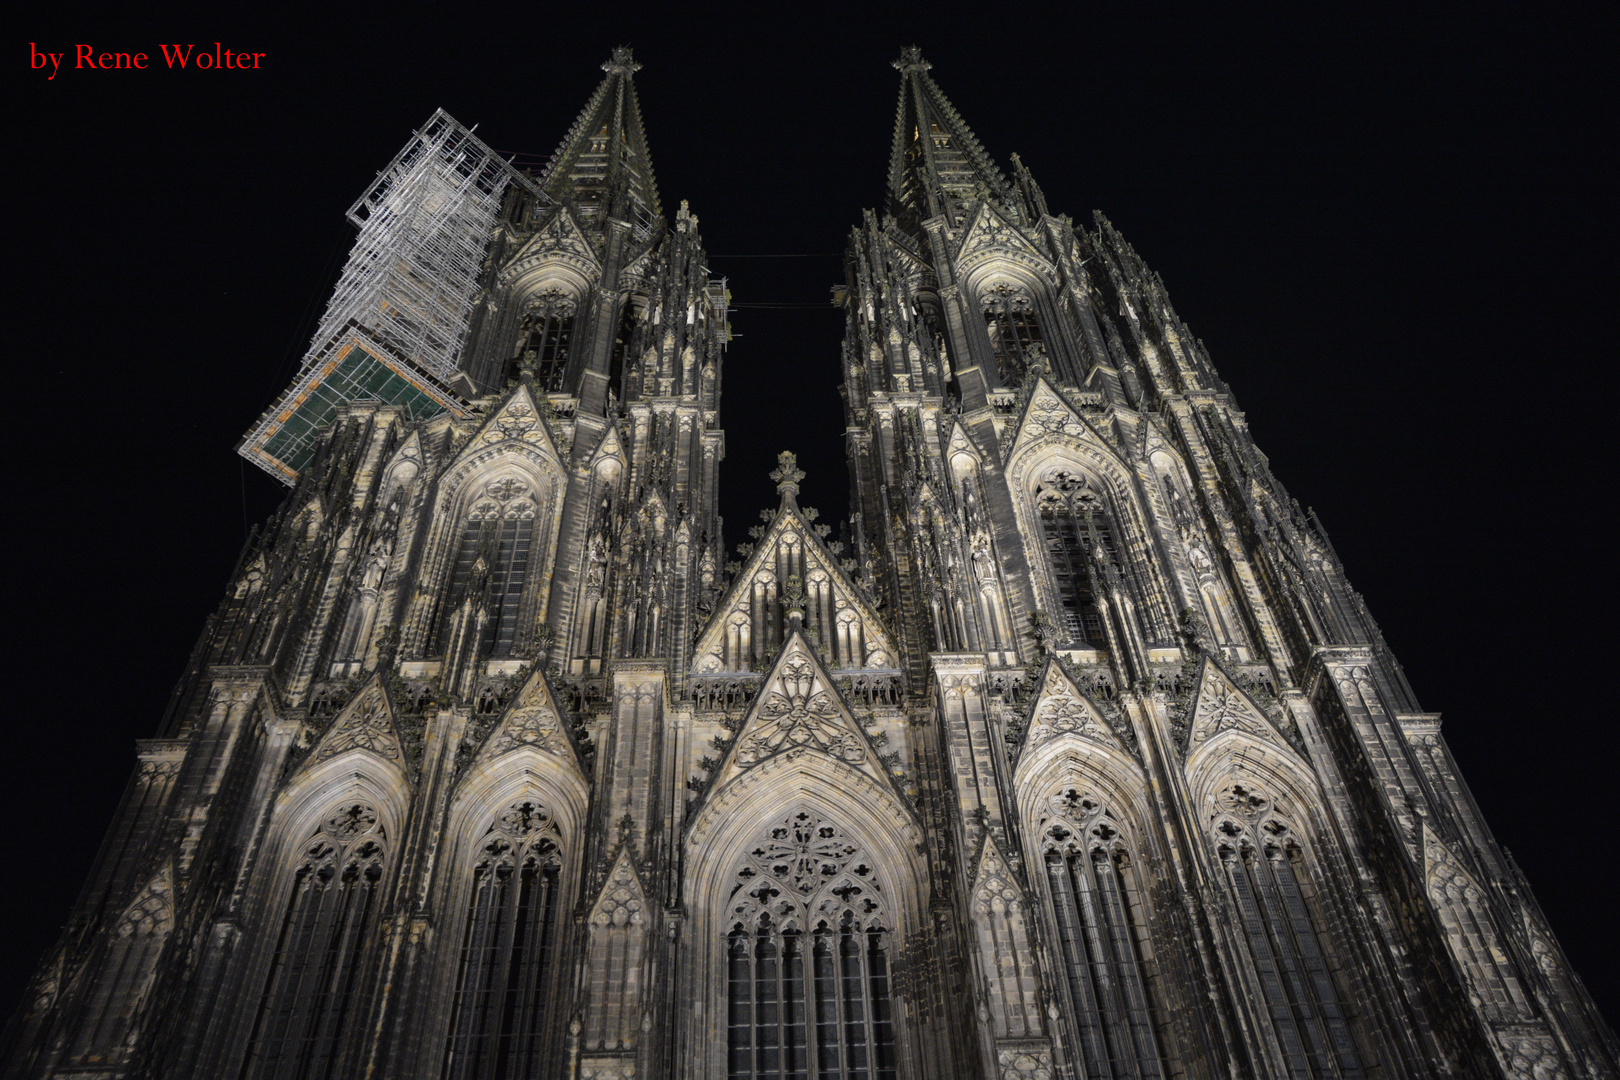 Kölner Dom bei Nacht Vorne